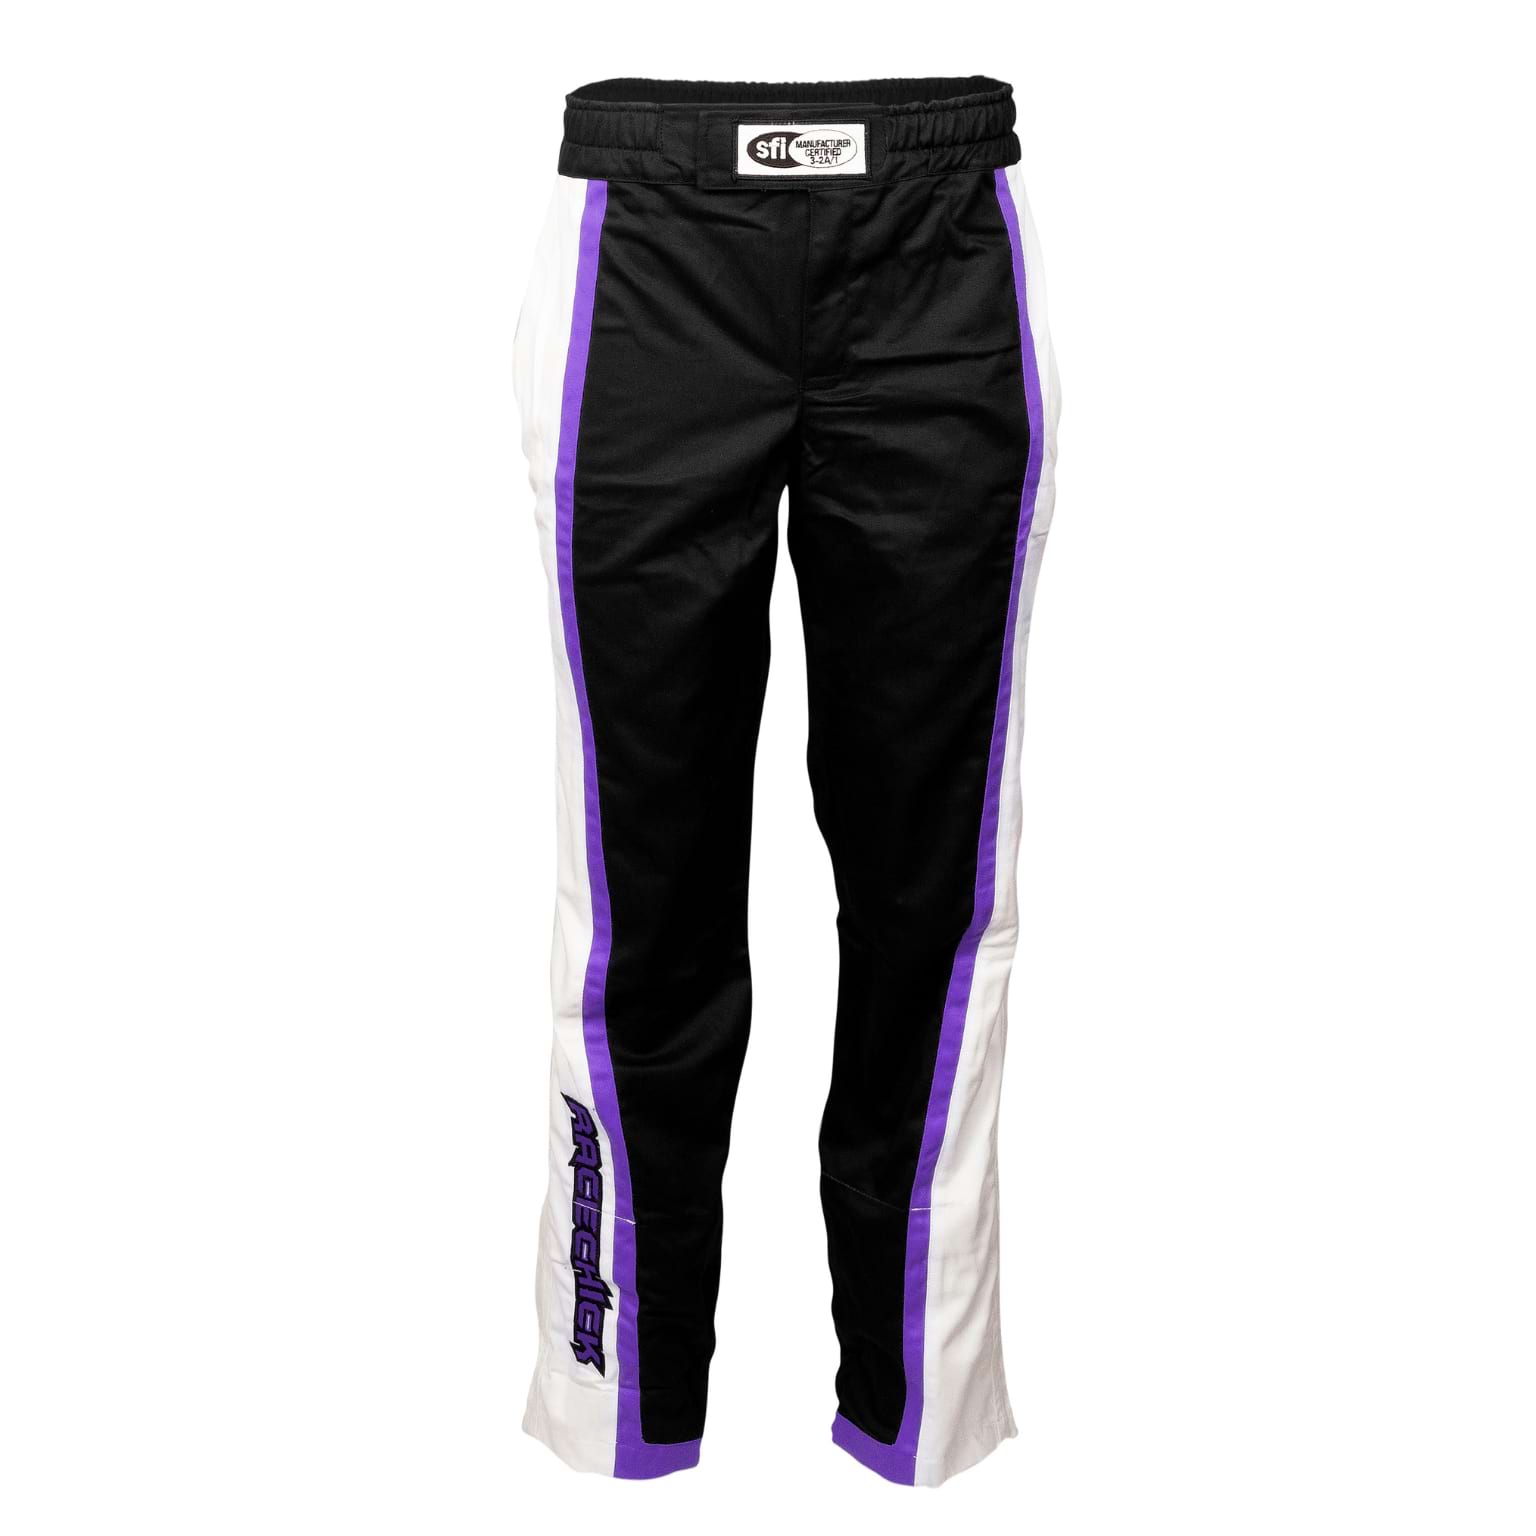 Racechick 'FIERCE' SFI 3.2A/1 Women's Racing Pants (Black/Purple)